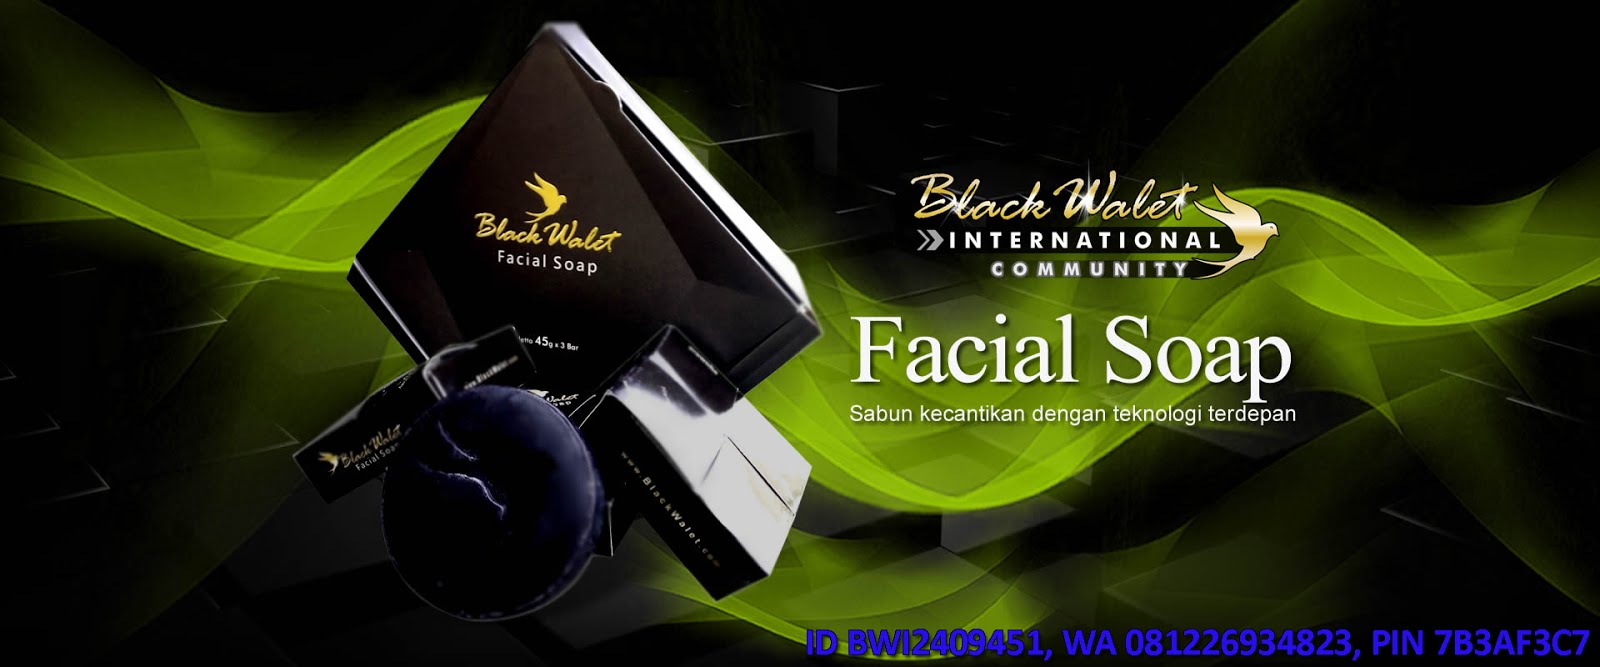 Black Walet Facial Soap